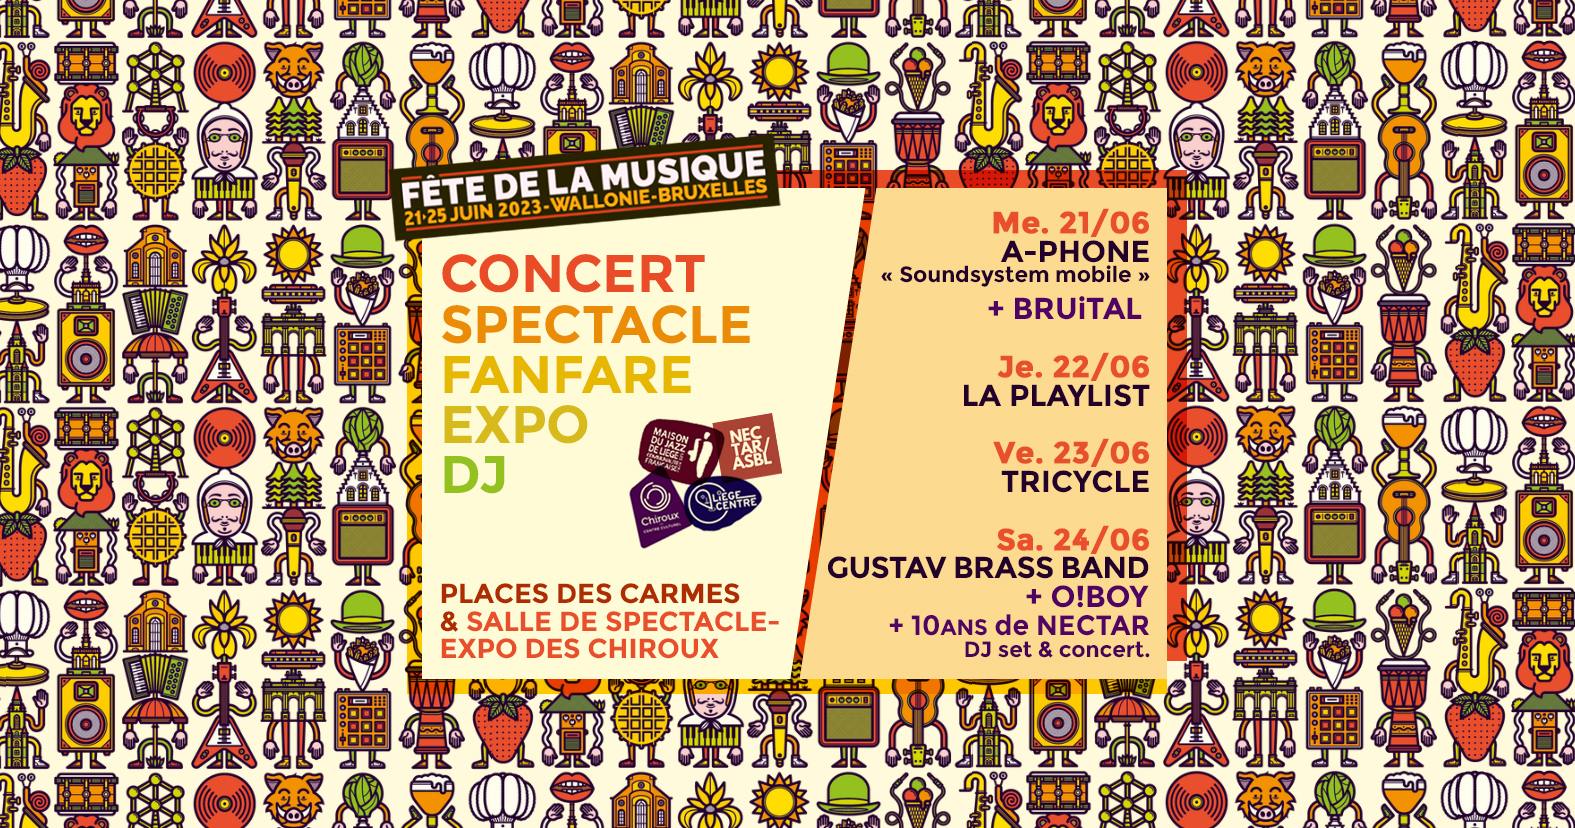 Fête de la musique aux Chiroux & Place des Carmes à LIEGE